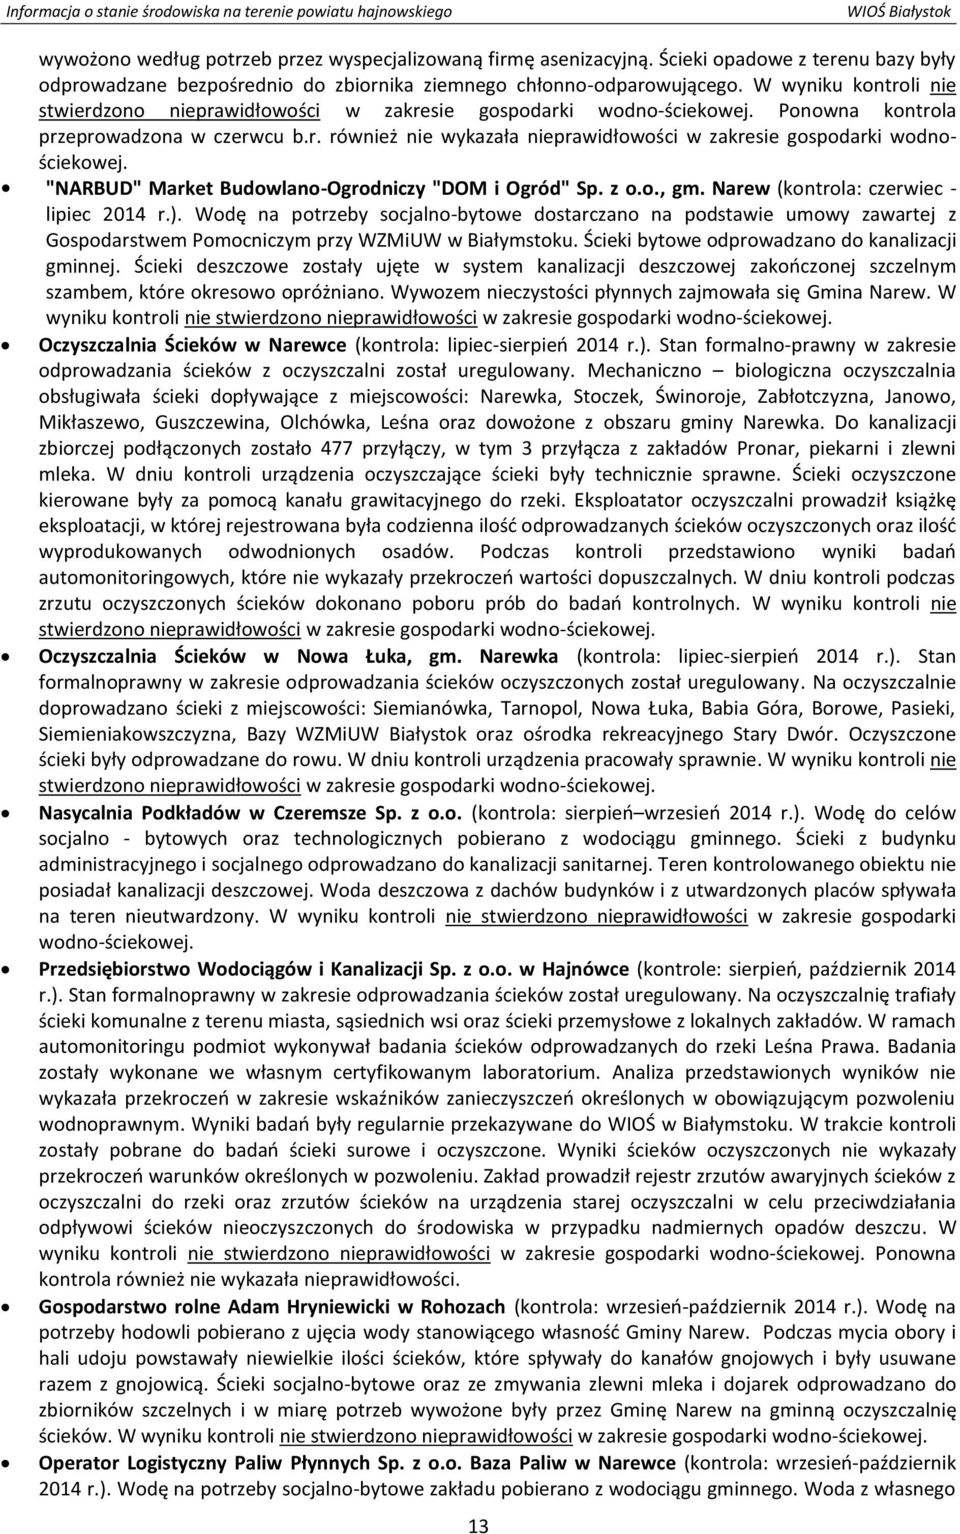 "NARBUD" Market Budowlano-Ogrodniczy "DOM i Ogród" Sp. z o.o., gm. Narew (kontrola: czerwiec - lipiec 2014 r.).